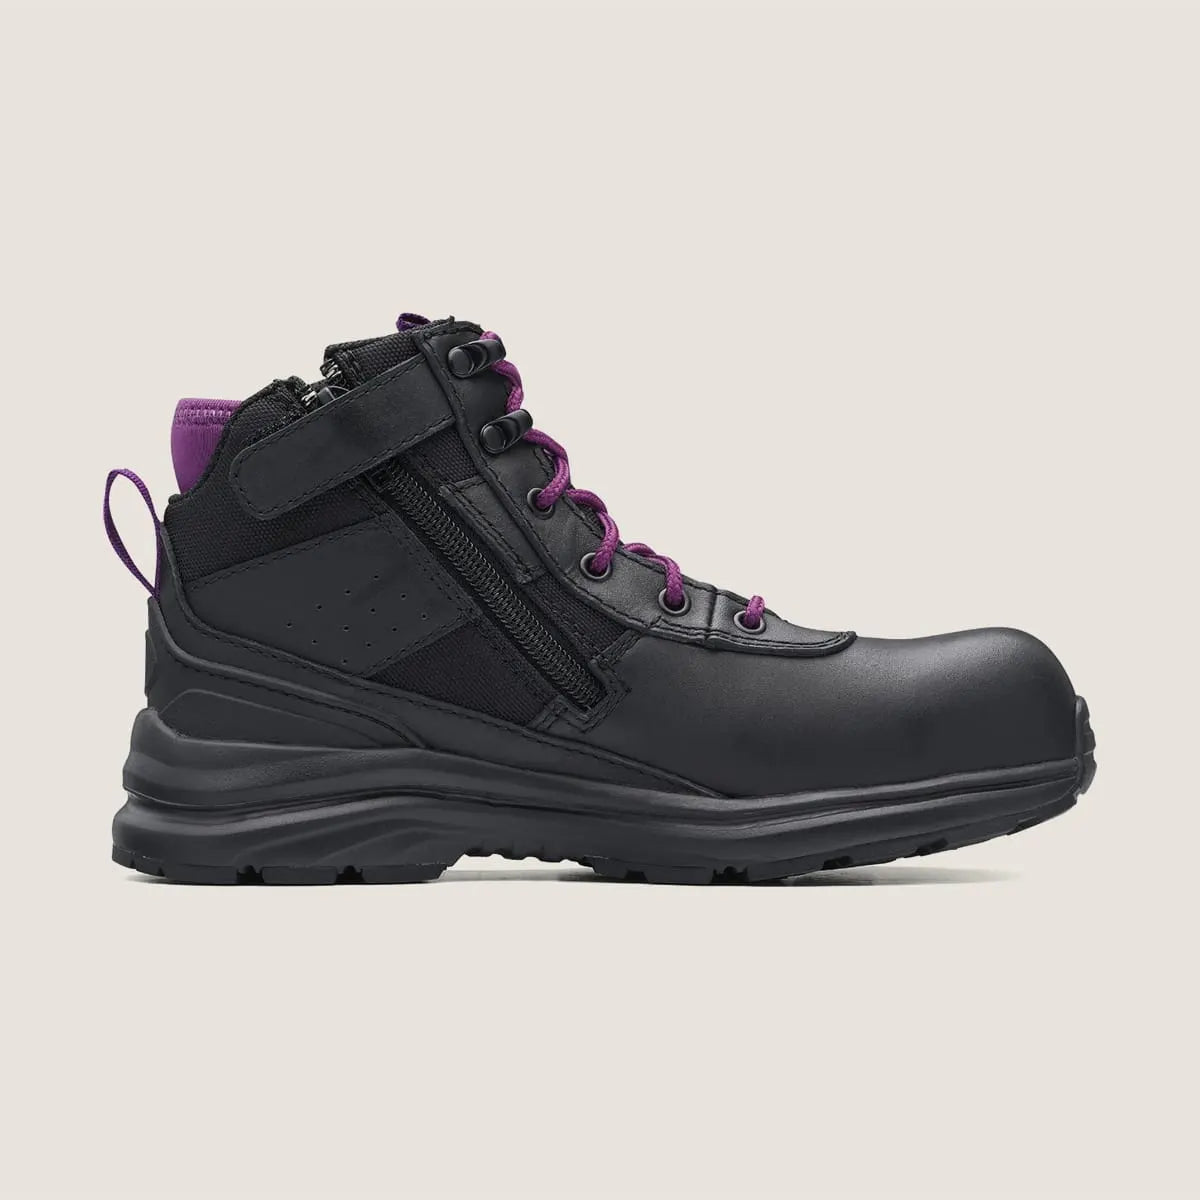 Blundstone 887 Women's Zip Safety Boot-Black